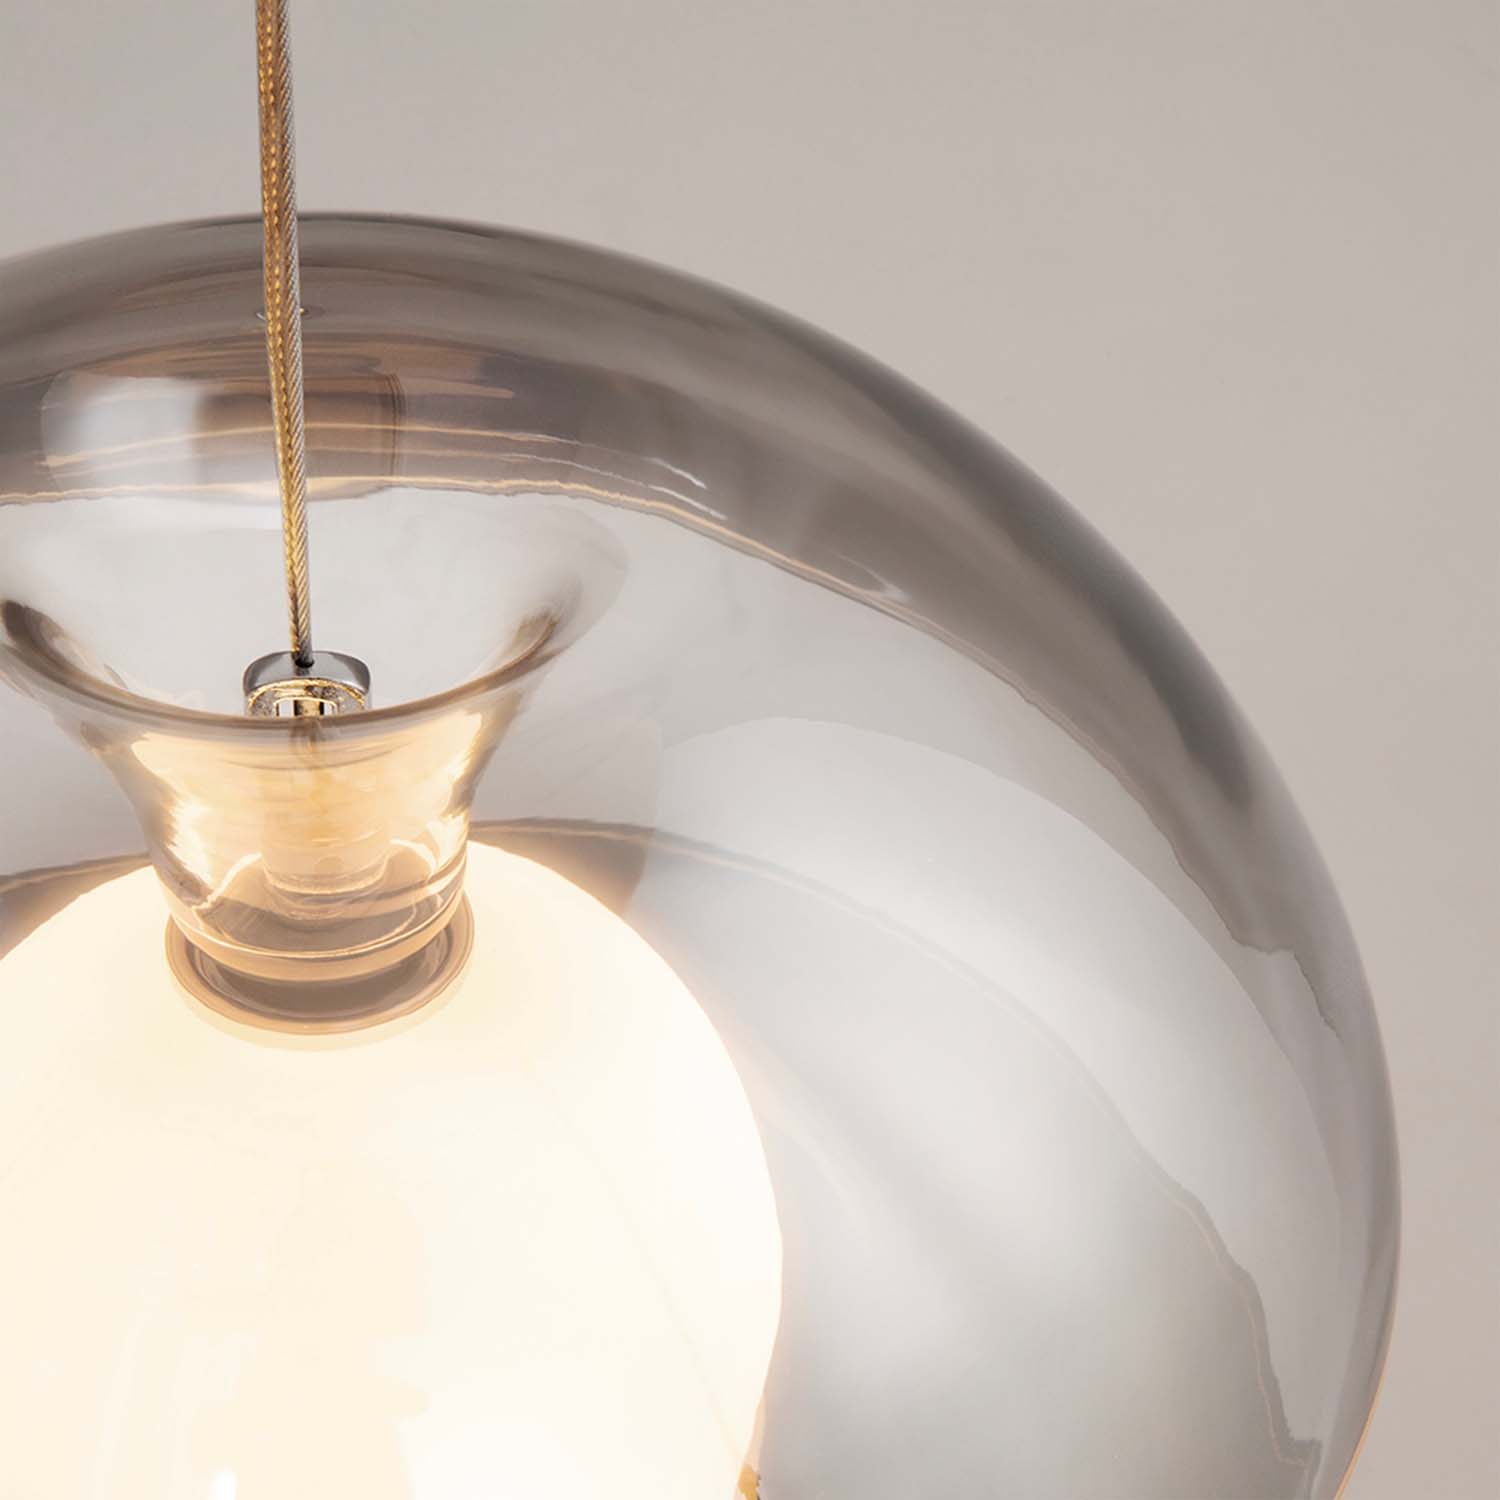 REBEL - Designer-Pendelleuchte in Form eines Apfels, Rauchglas. Integrierte LED